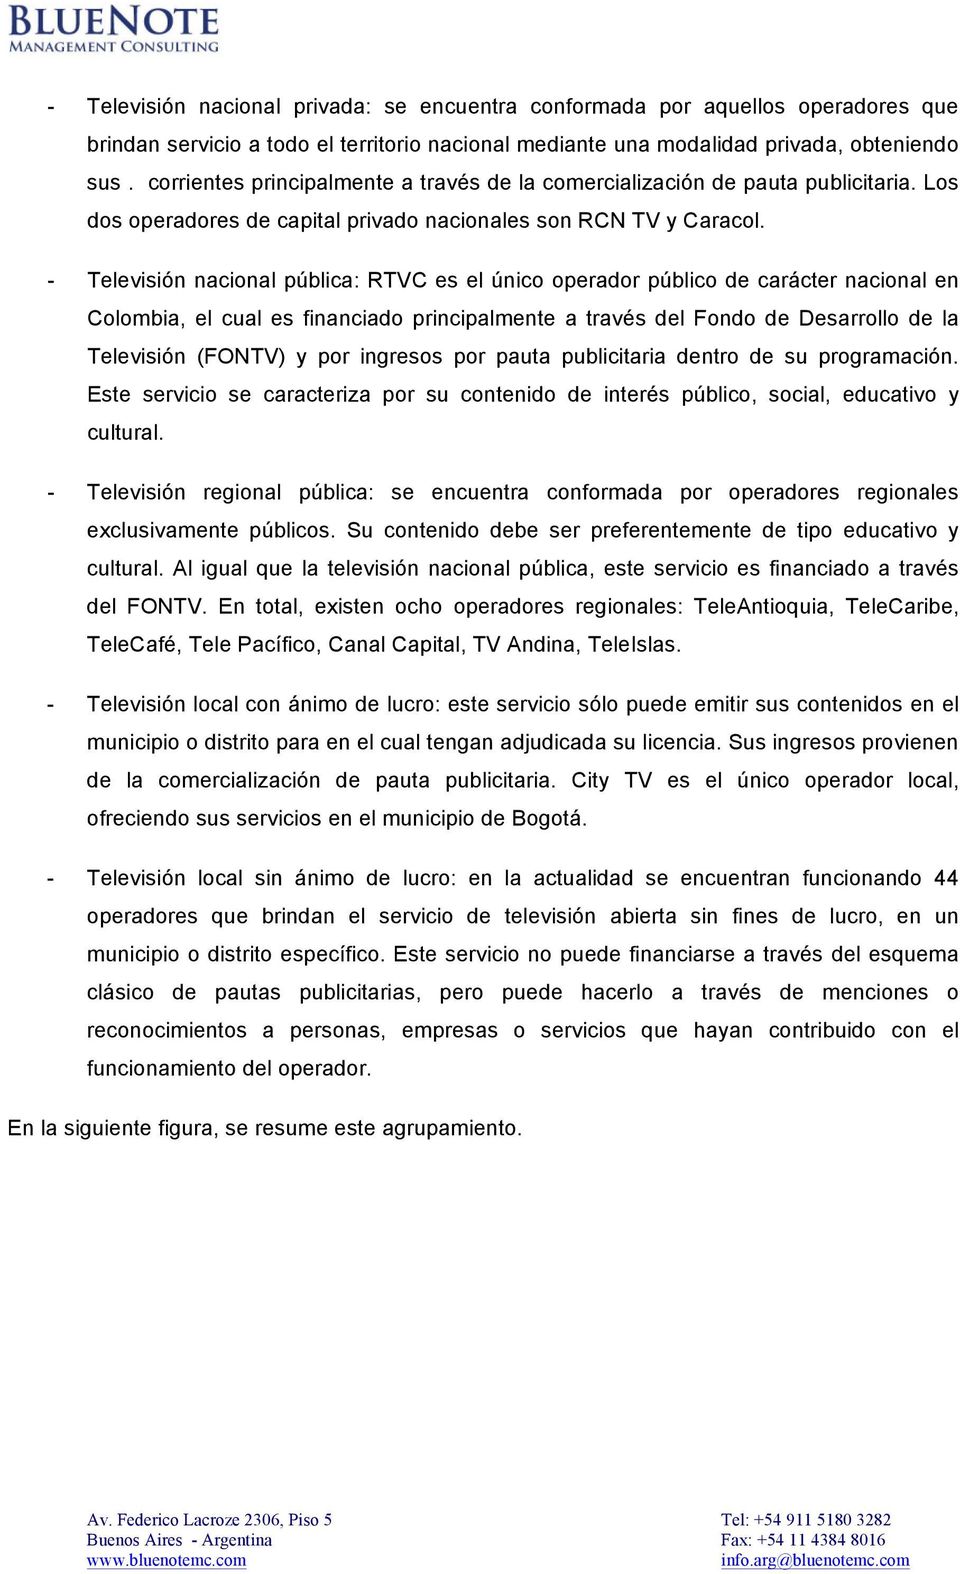 - Televisión nacional pública: RTVC es el único operador público de carácter nacional en Colombia, el cual es financiado principalmente a través del Fondo de Desarrollo de la Televisión (FONTV) y por